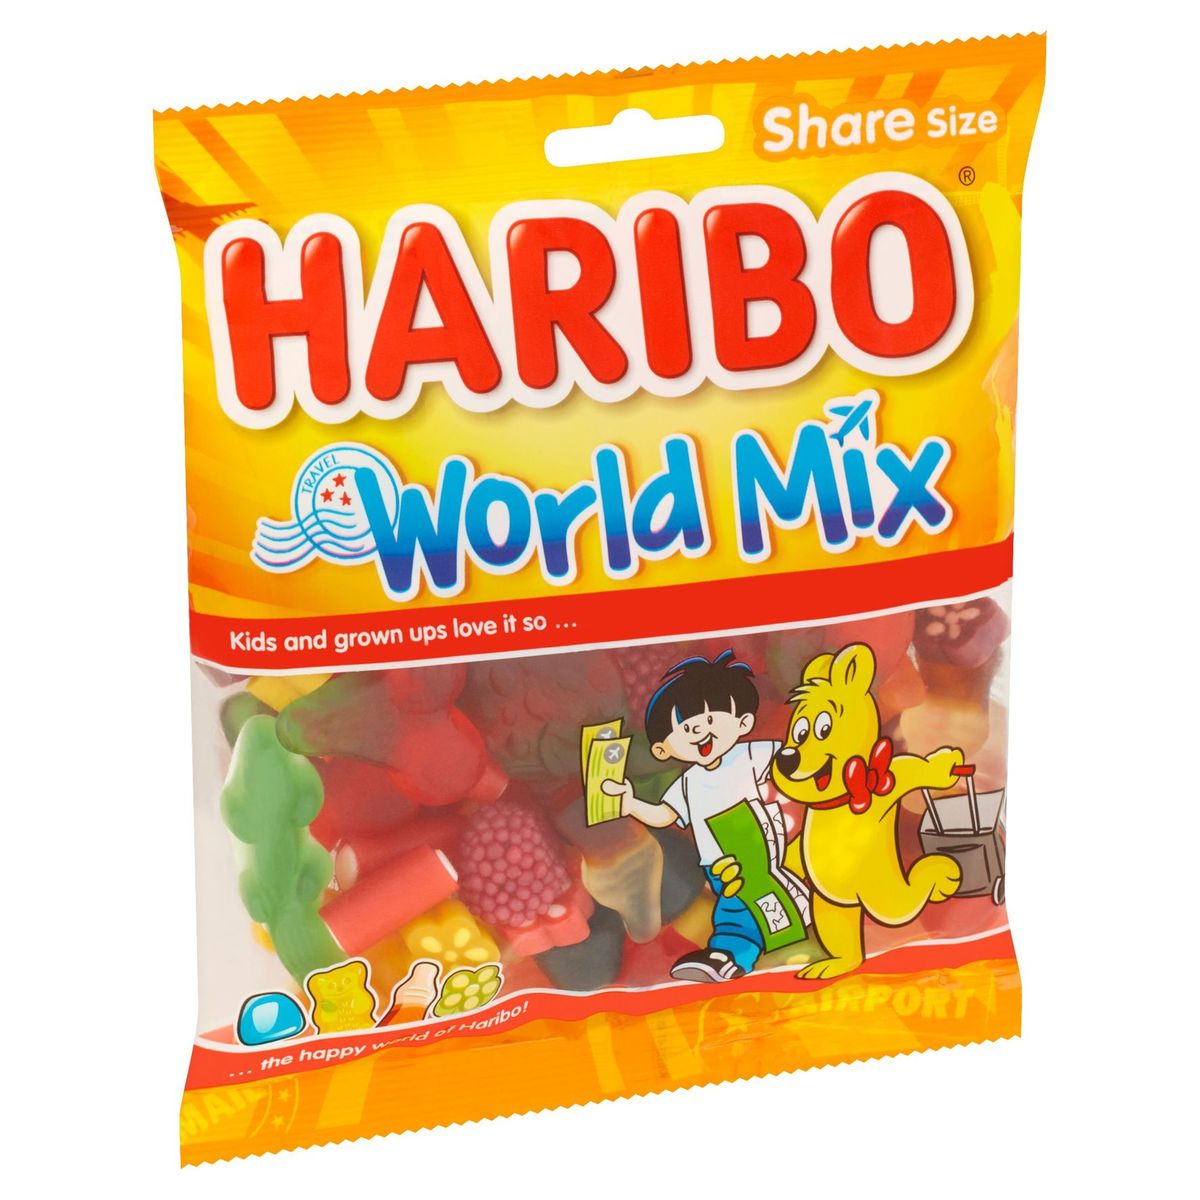 Haribo World Mix Share Size 225 g